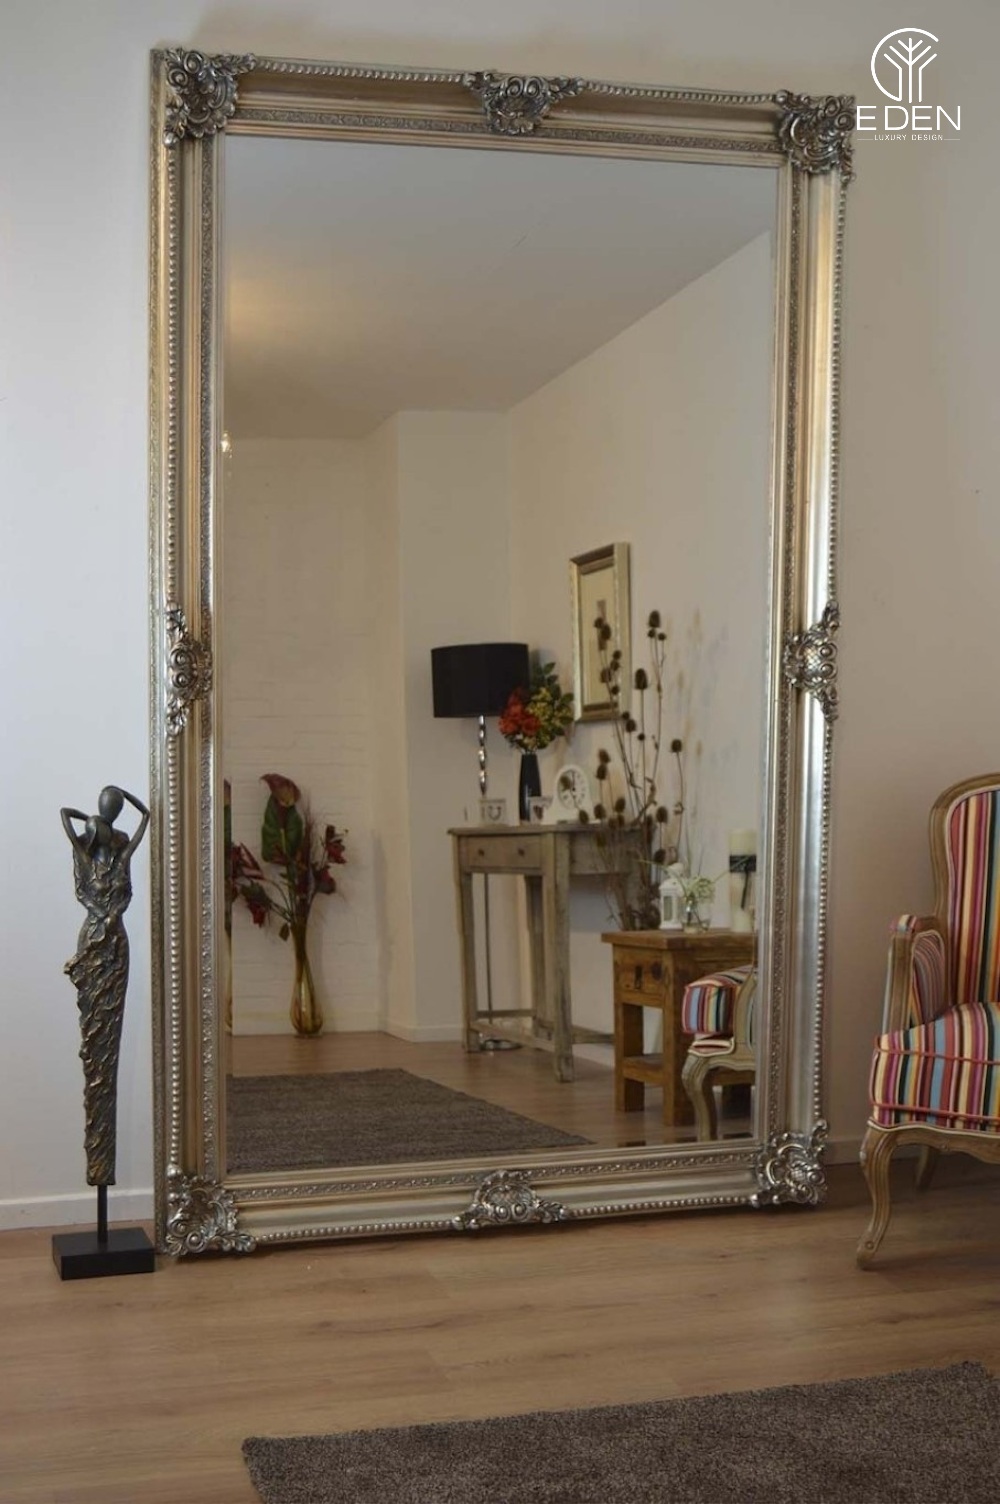 Gương cỡ lớn với nét đẹp cổ điển là dấu ấn độc đáo cho phòng khách sang trọng